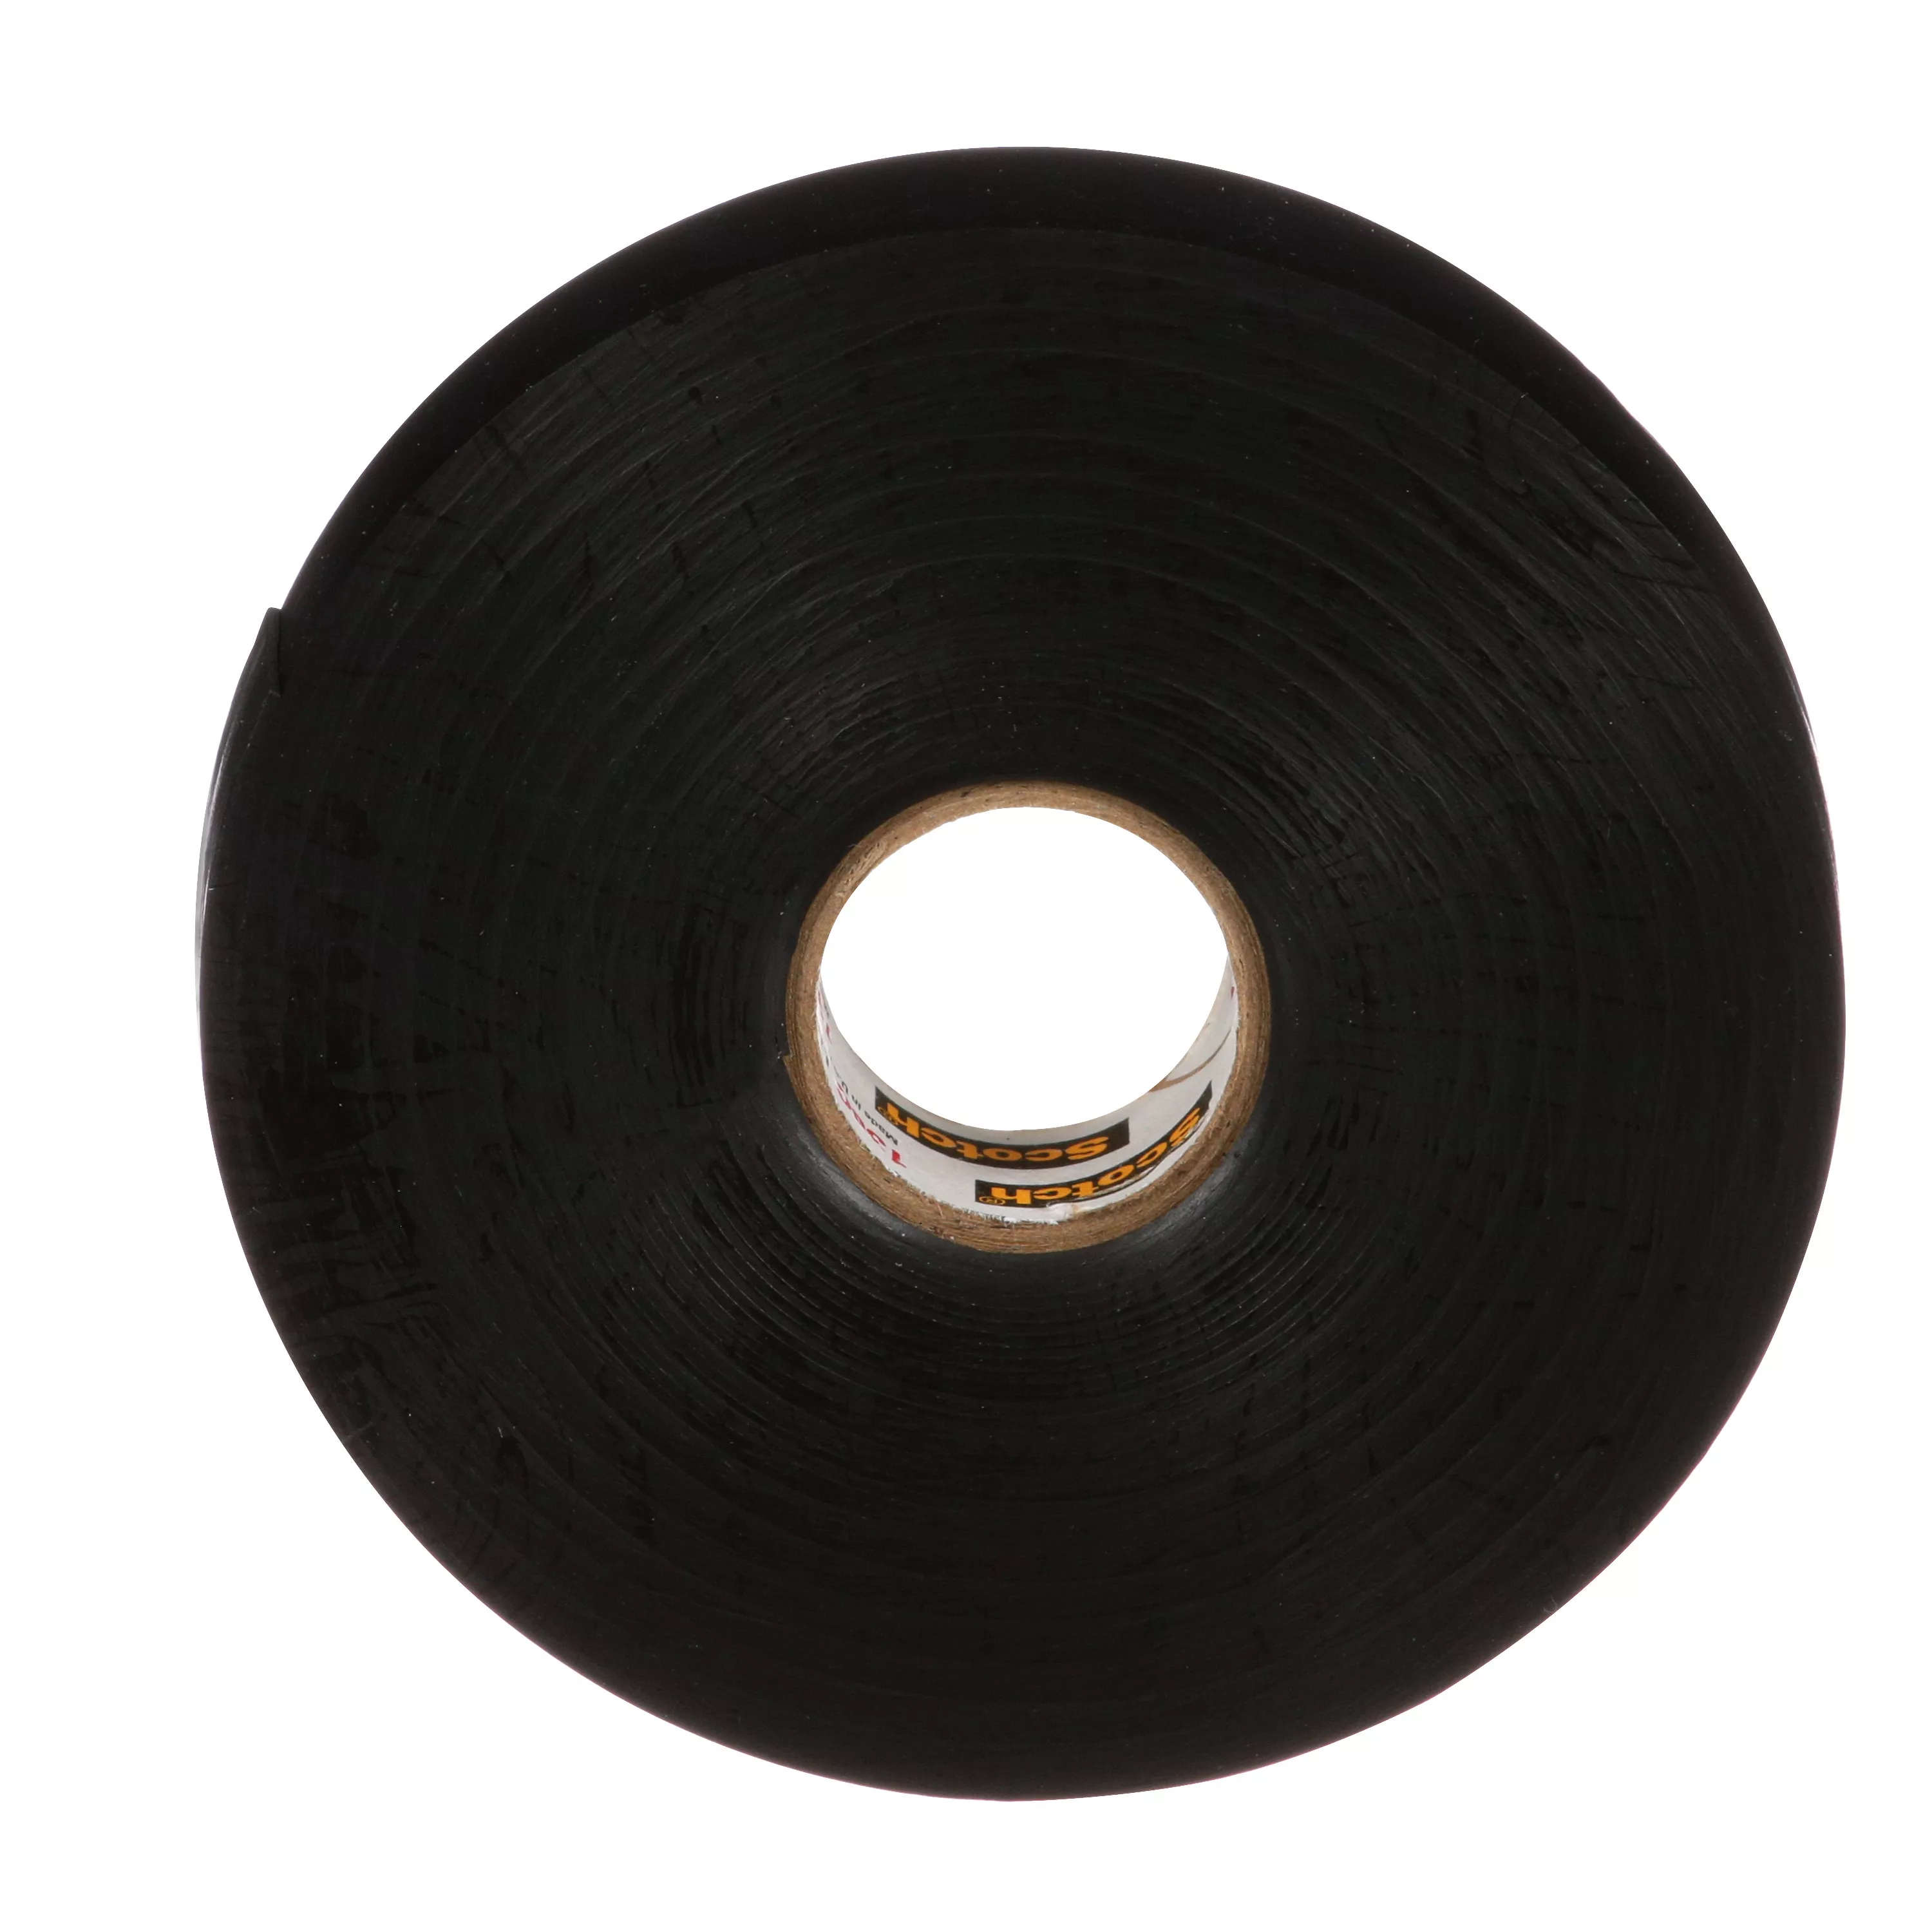 SKU 7000006085 | Scotch® Linerless Rubber Splicing Tape 130C